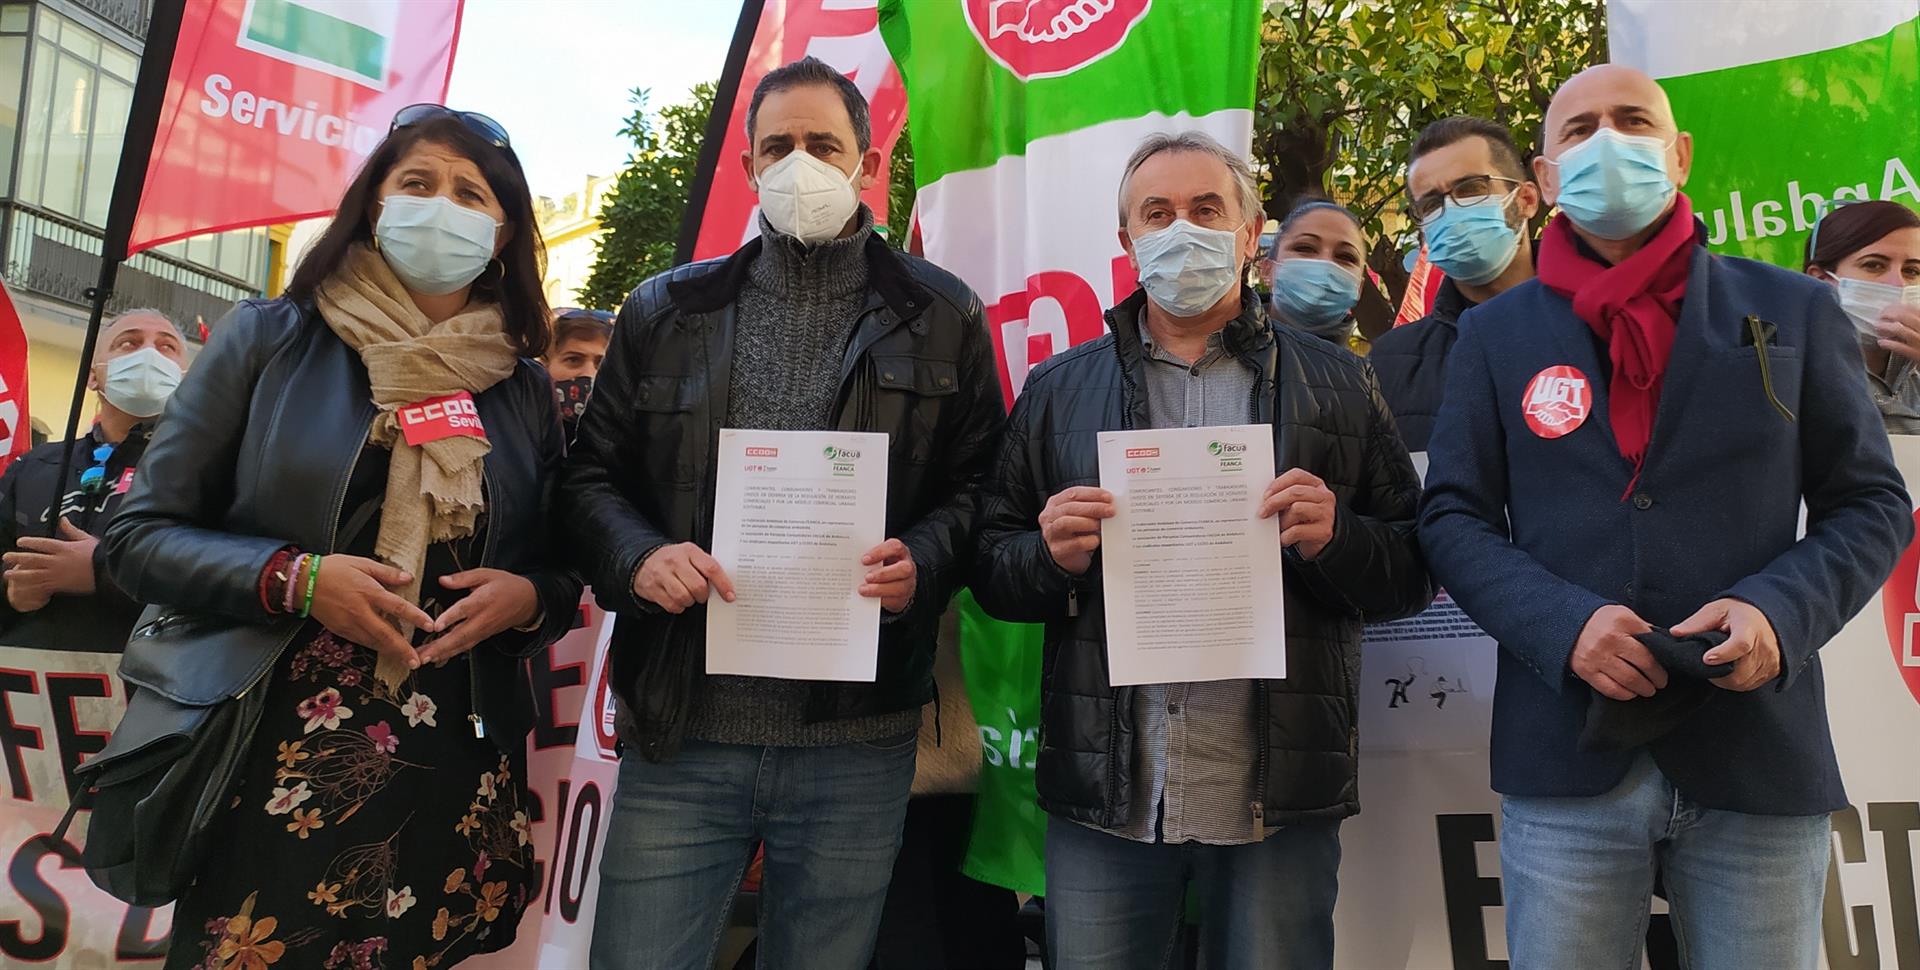 Protestas en Sevilla contra "la apertura indiscriminada domingos y festivos" en el sector del comercio.